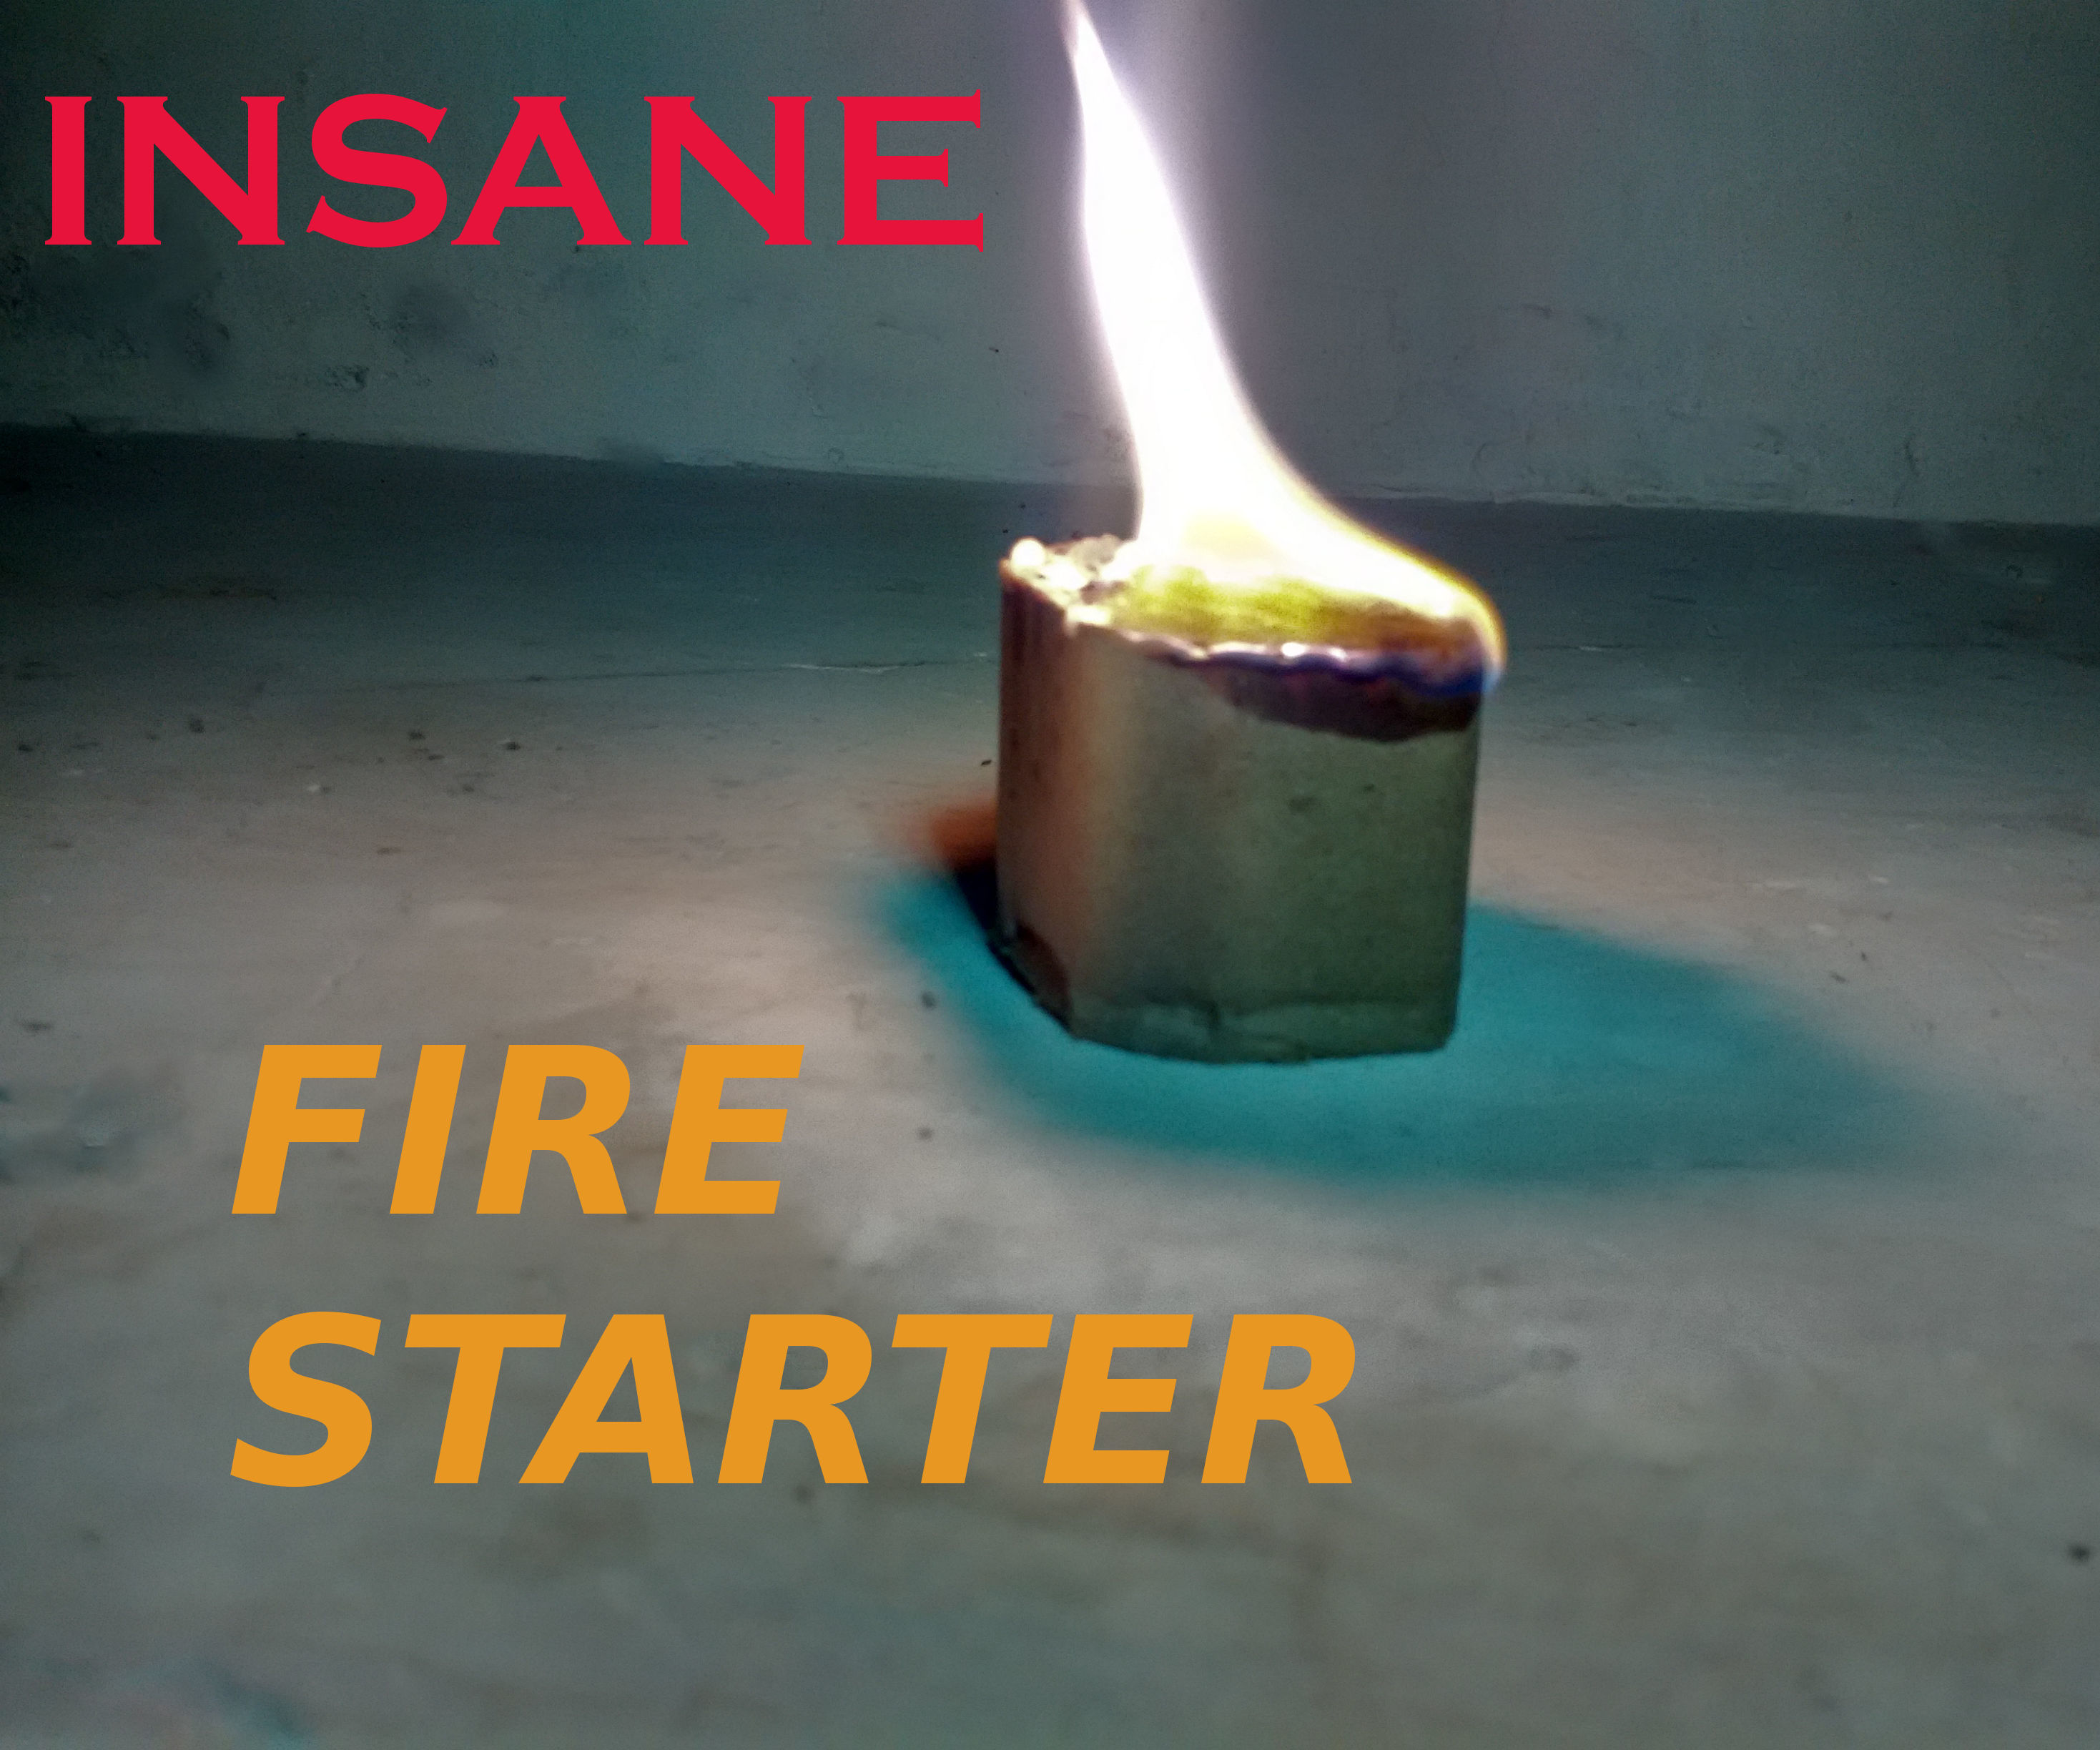 INSANE FIRE STARTER(for backyard).